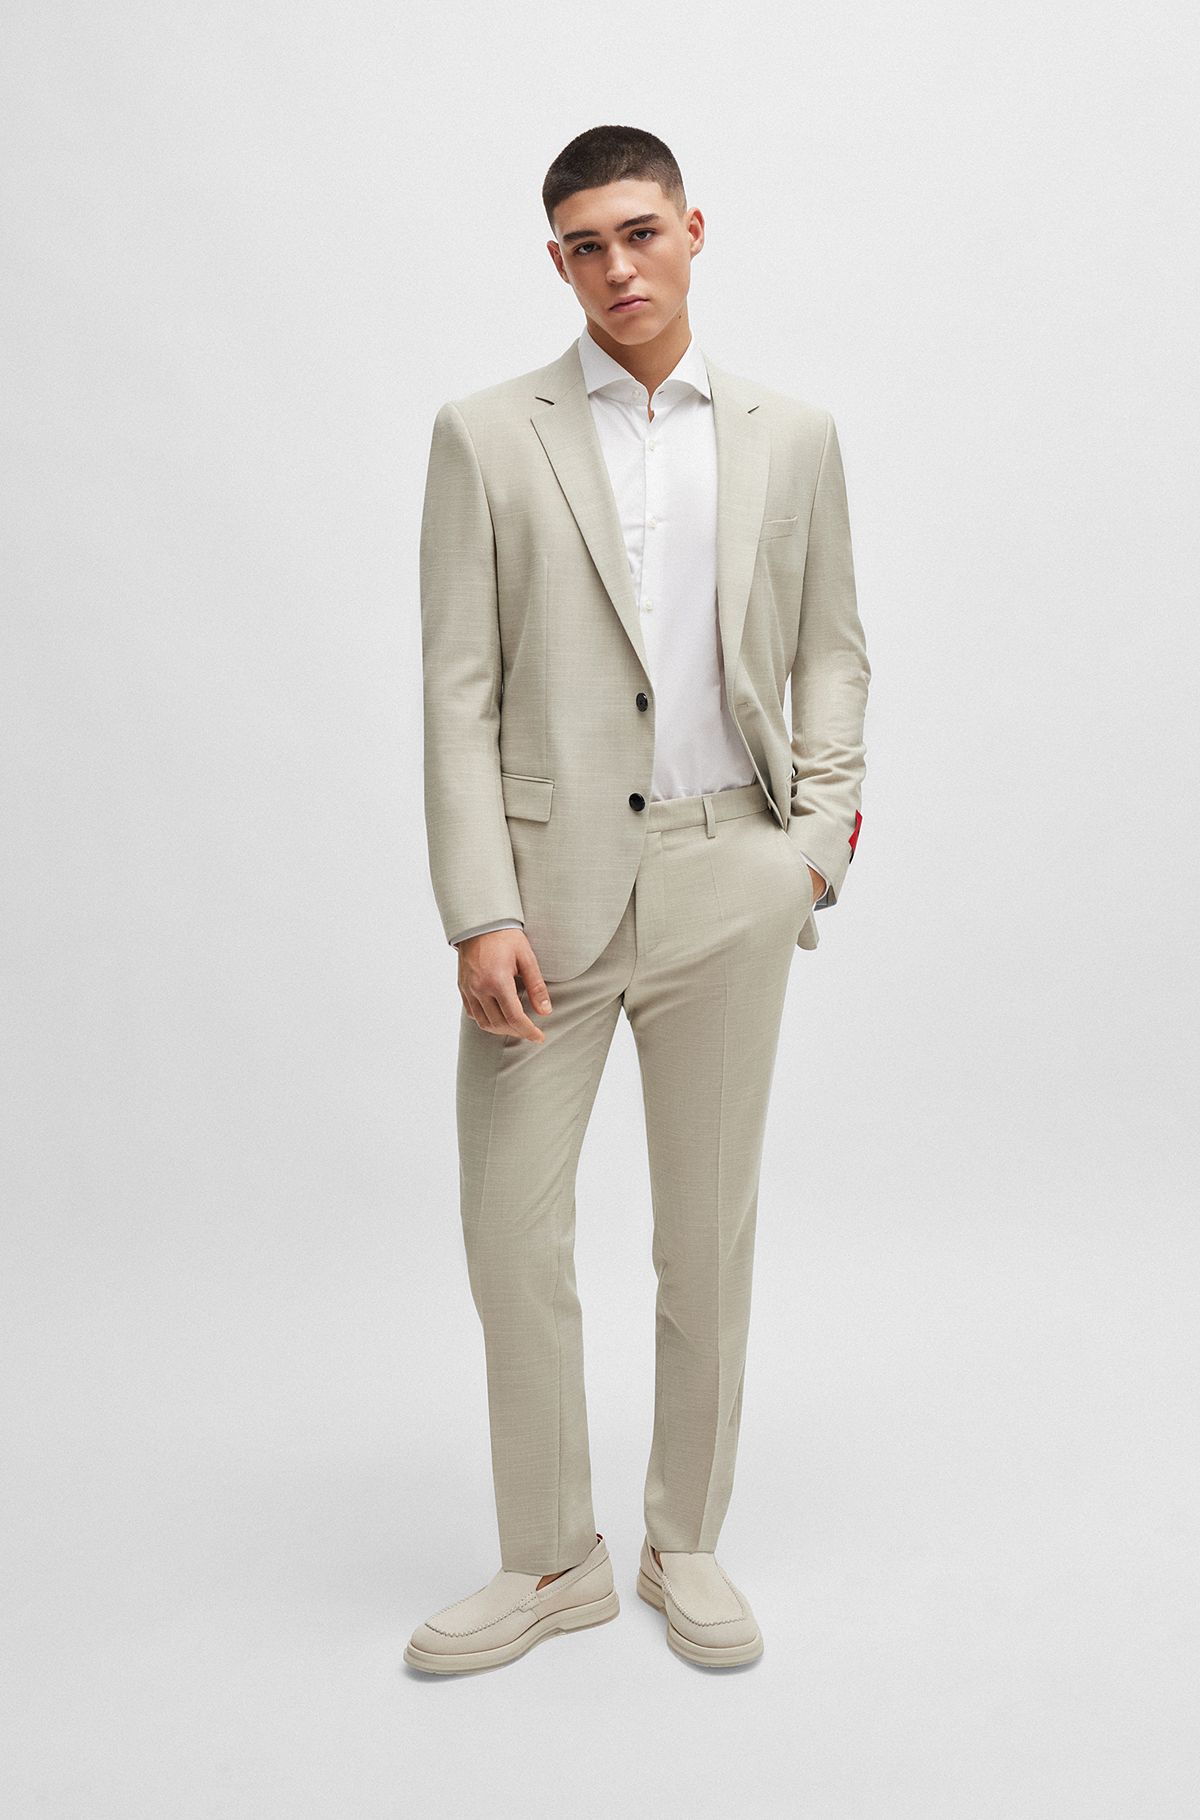 Elegant Suits for Men | Men's Designer Suits by HUGO BOSS